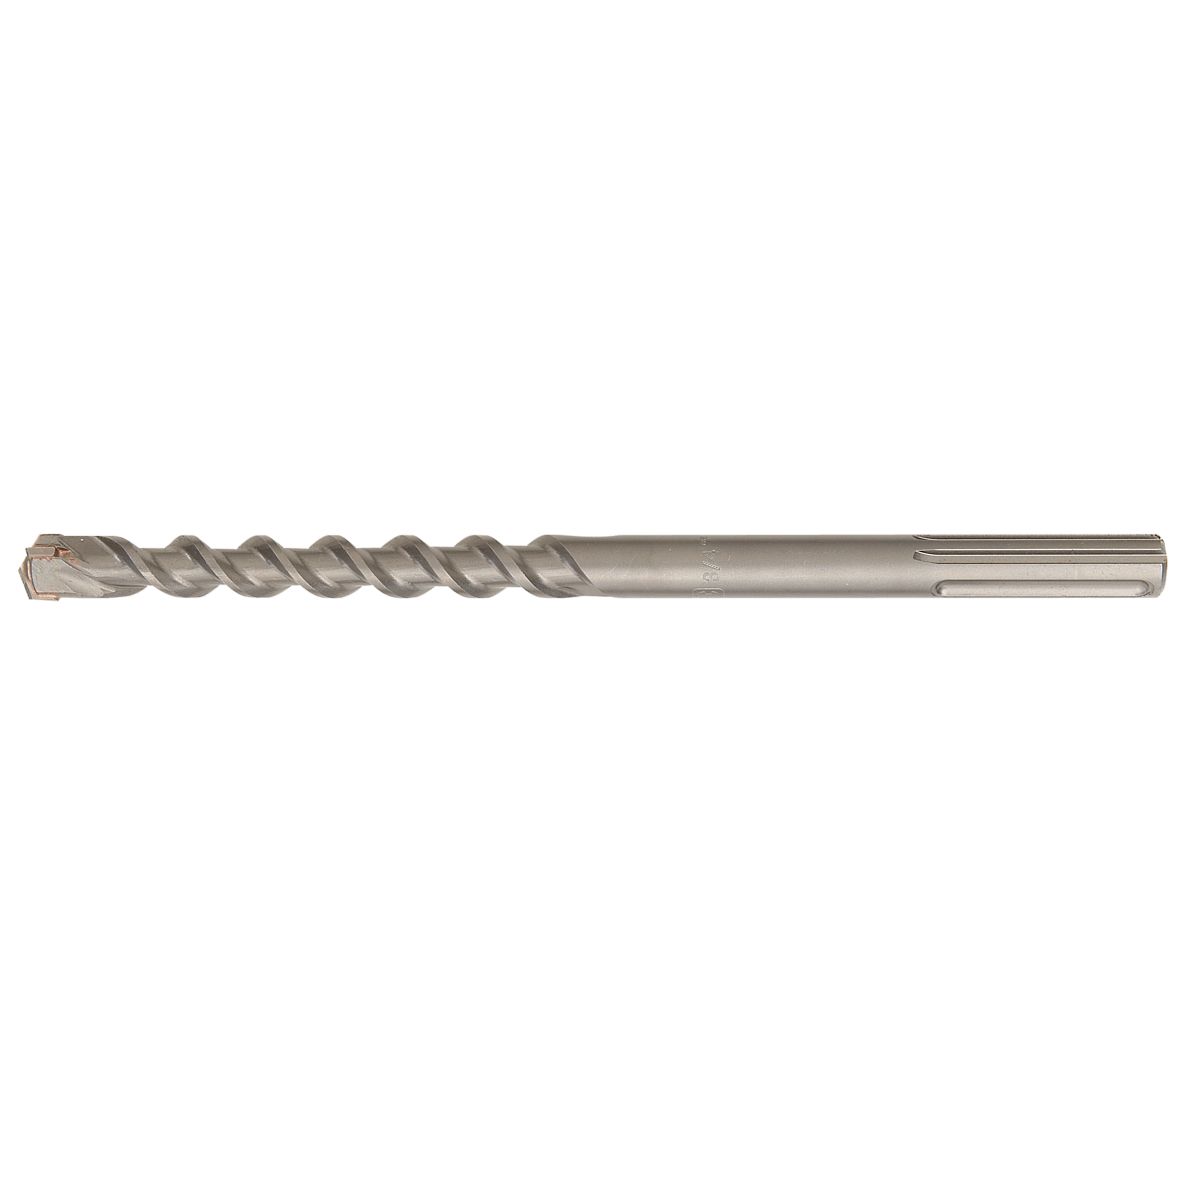 Bosch HC5030 3/4" x 13" SDS-Max Rotary Hammer Bit Carbide Hammer Drill Bit